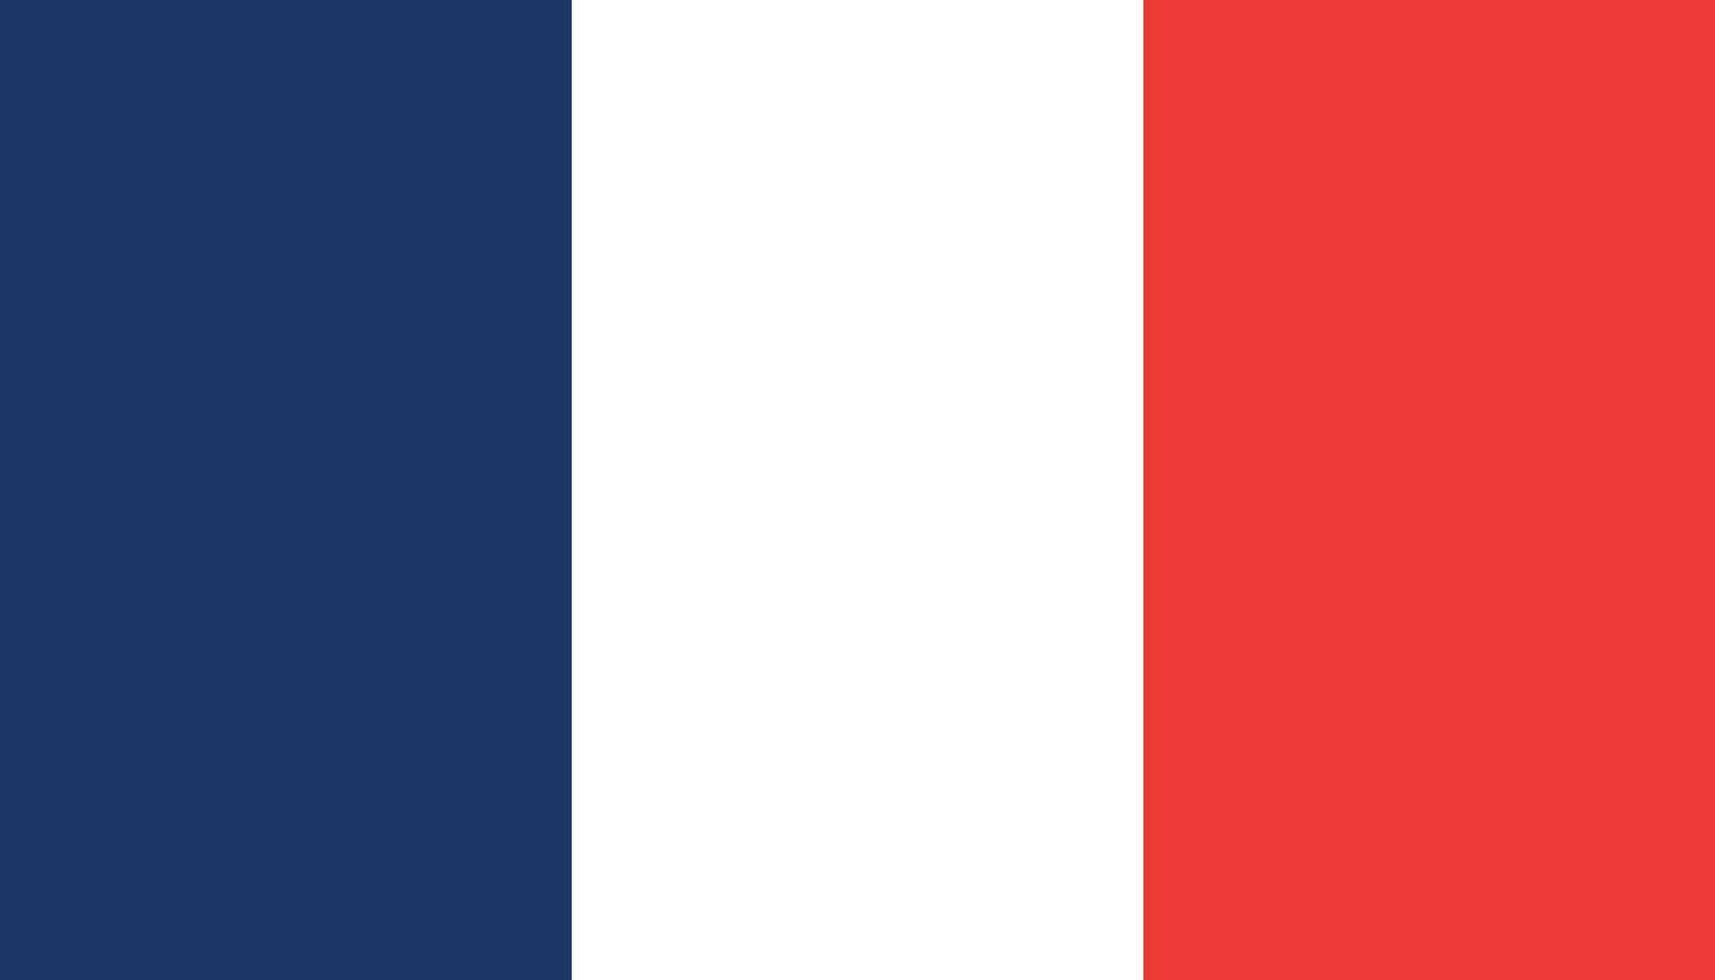 Frankreich Flagge Symbol im eben Stil. National Zeichen Vektor Illustration. politisch Geschäft Konzept.